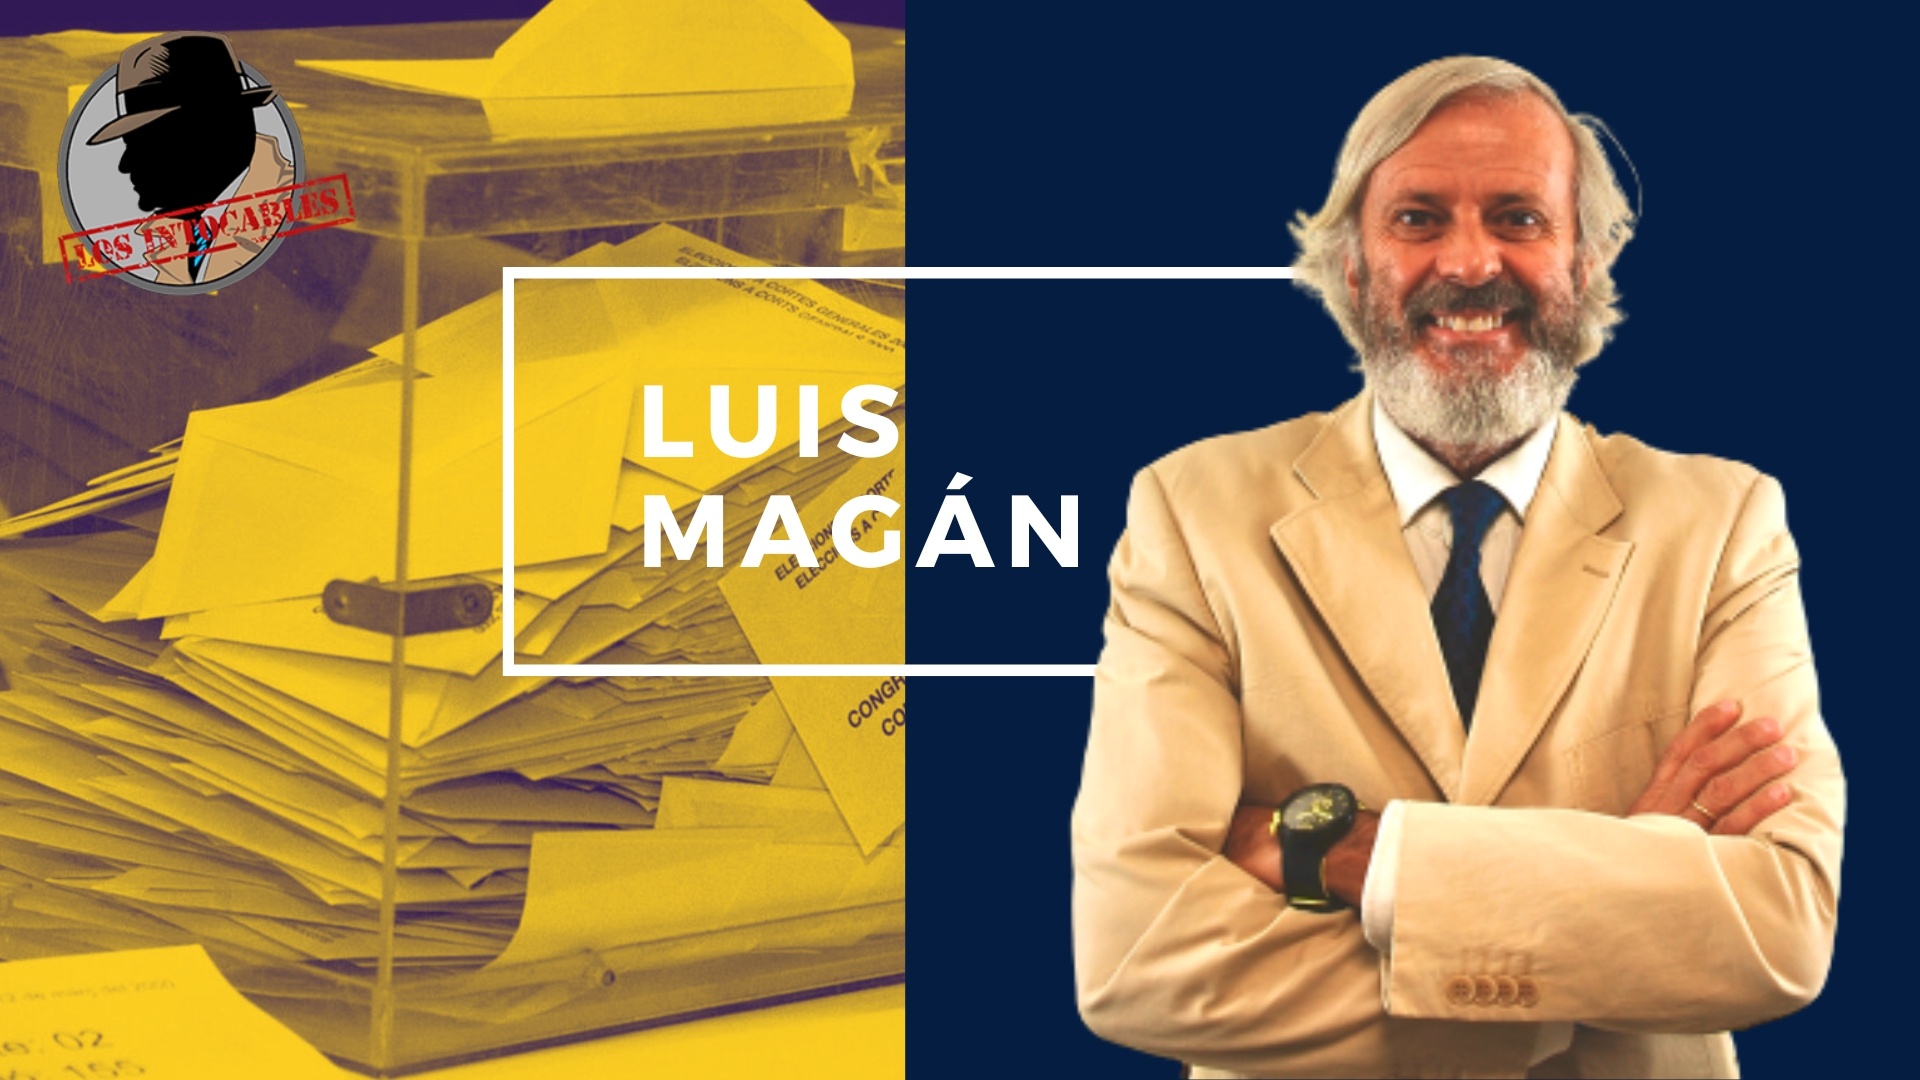 LUIS MAGAN